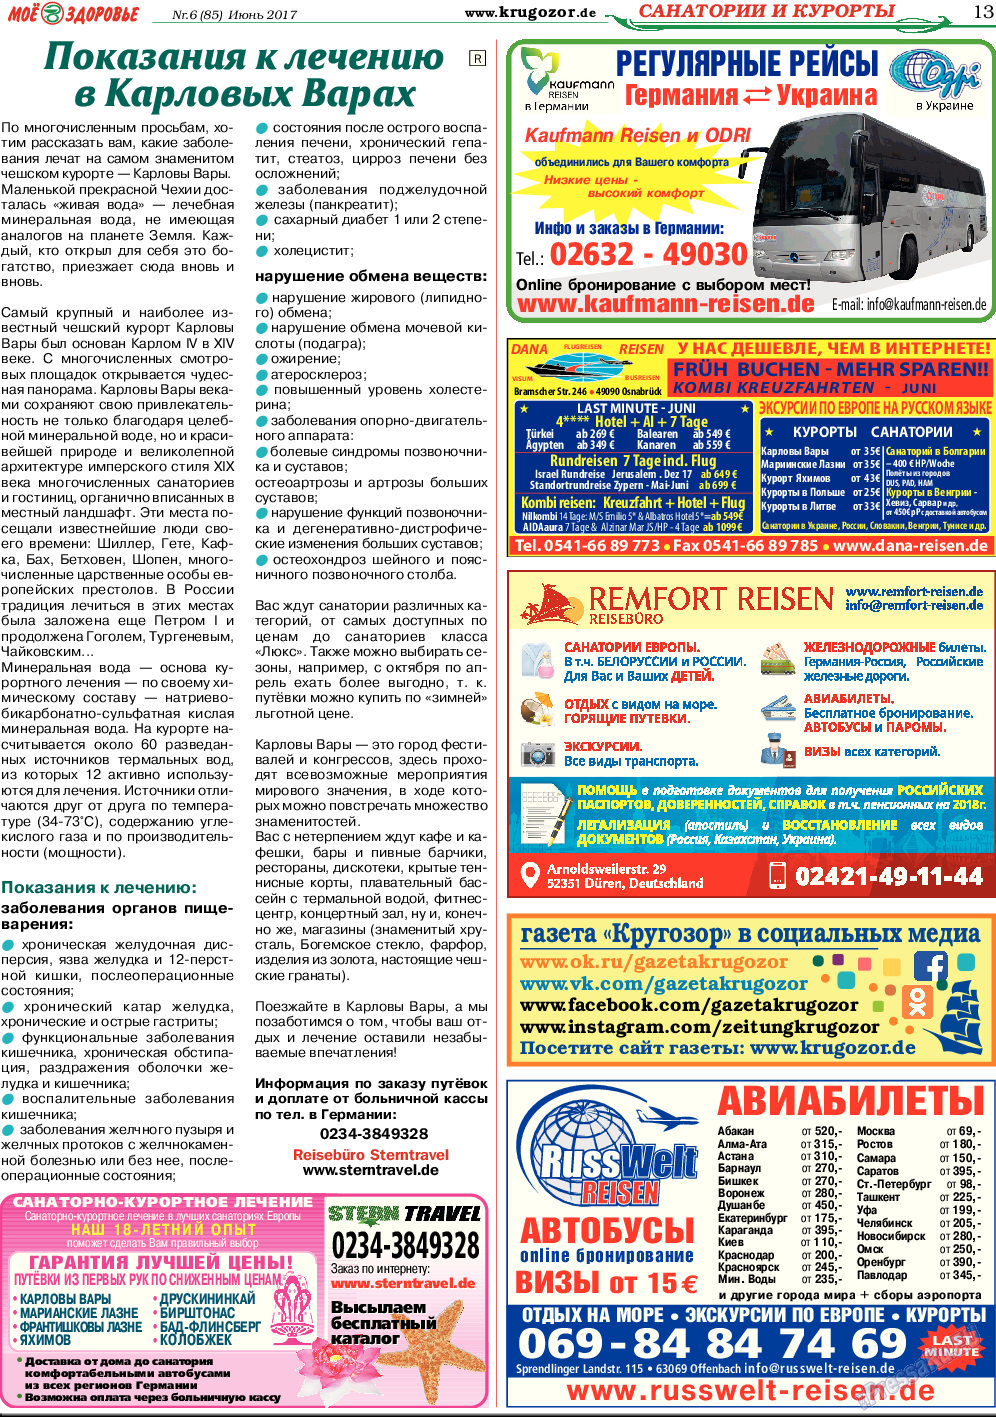 Кругозор, газета. 2017 №6 стр.13